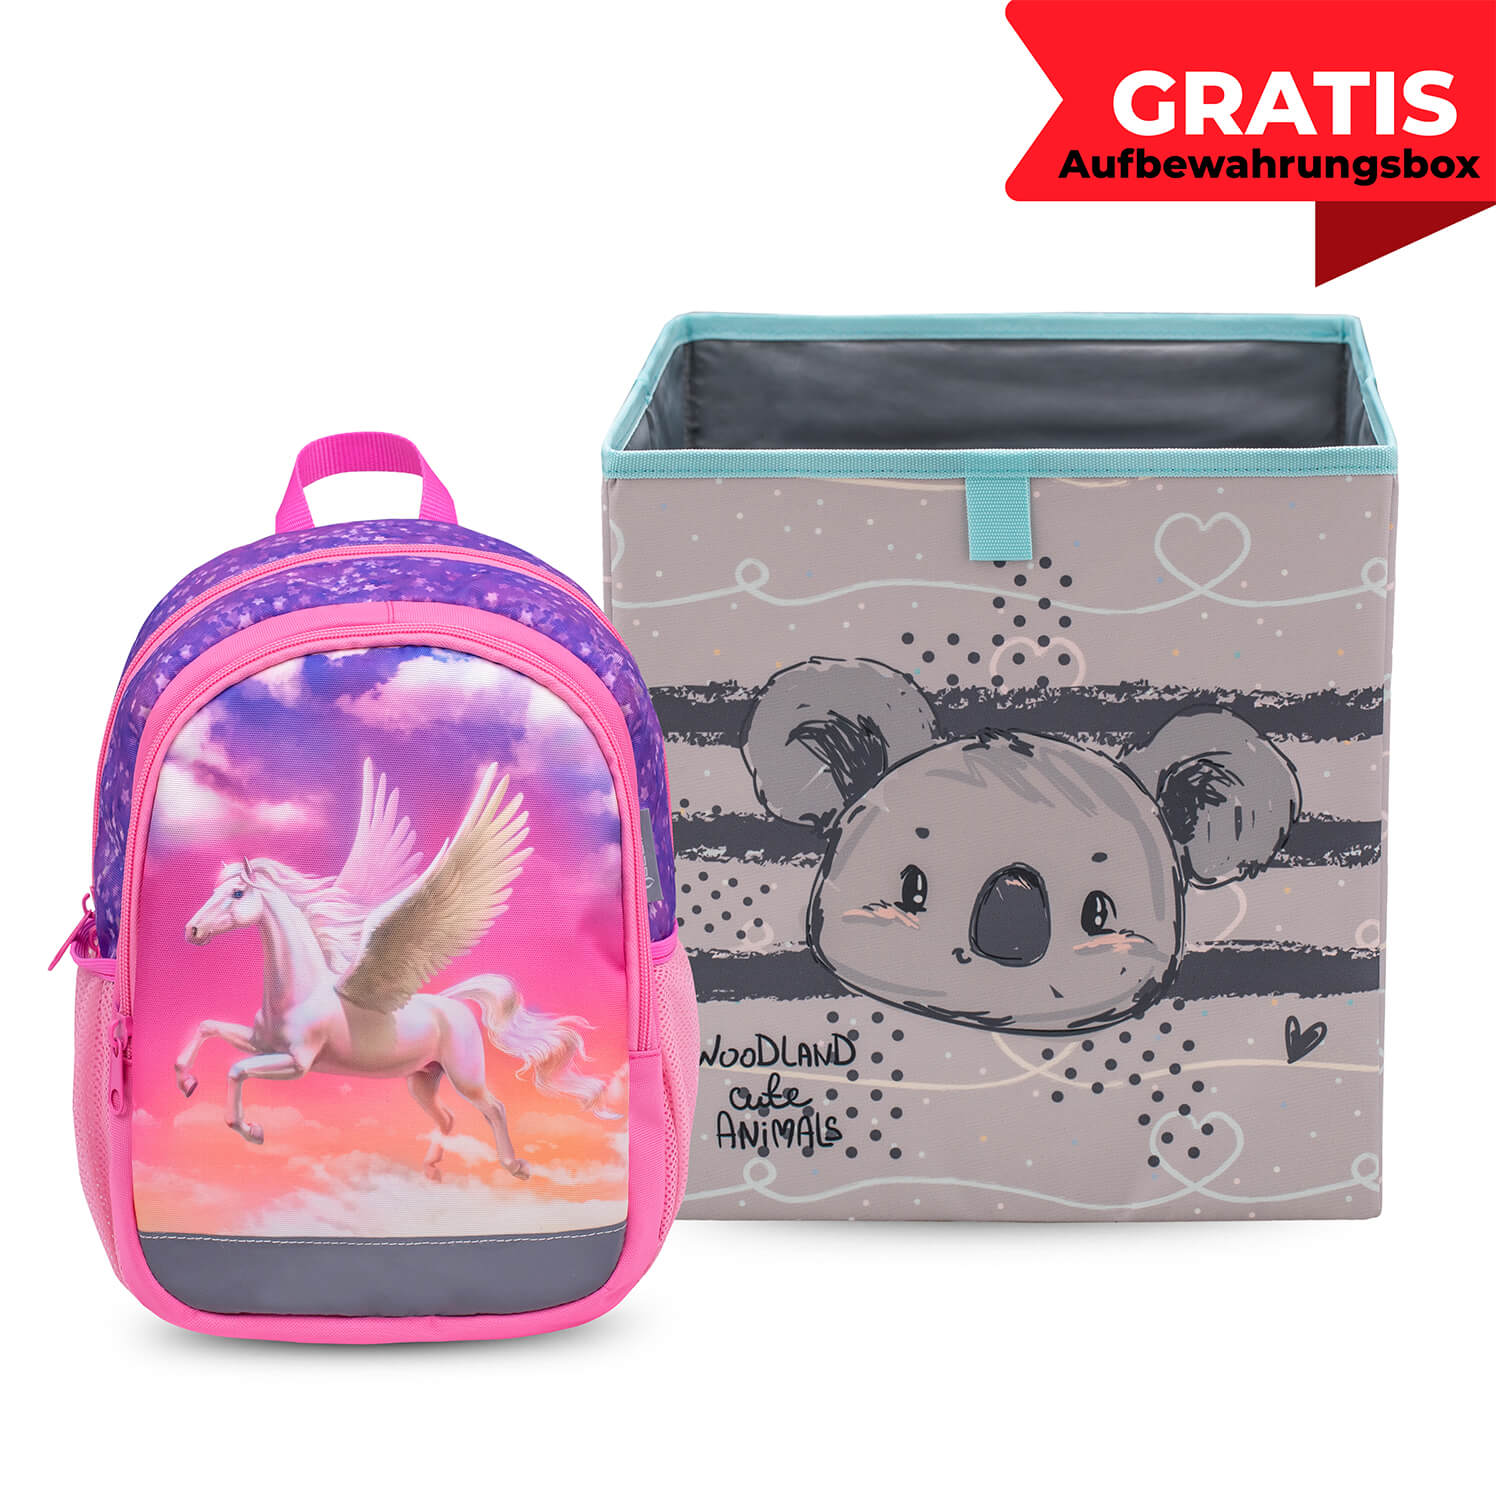 Kiddy Plus Pegasus Kindergarten Bag with GRATIS Storage box